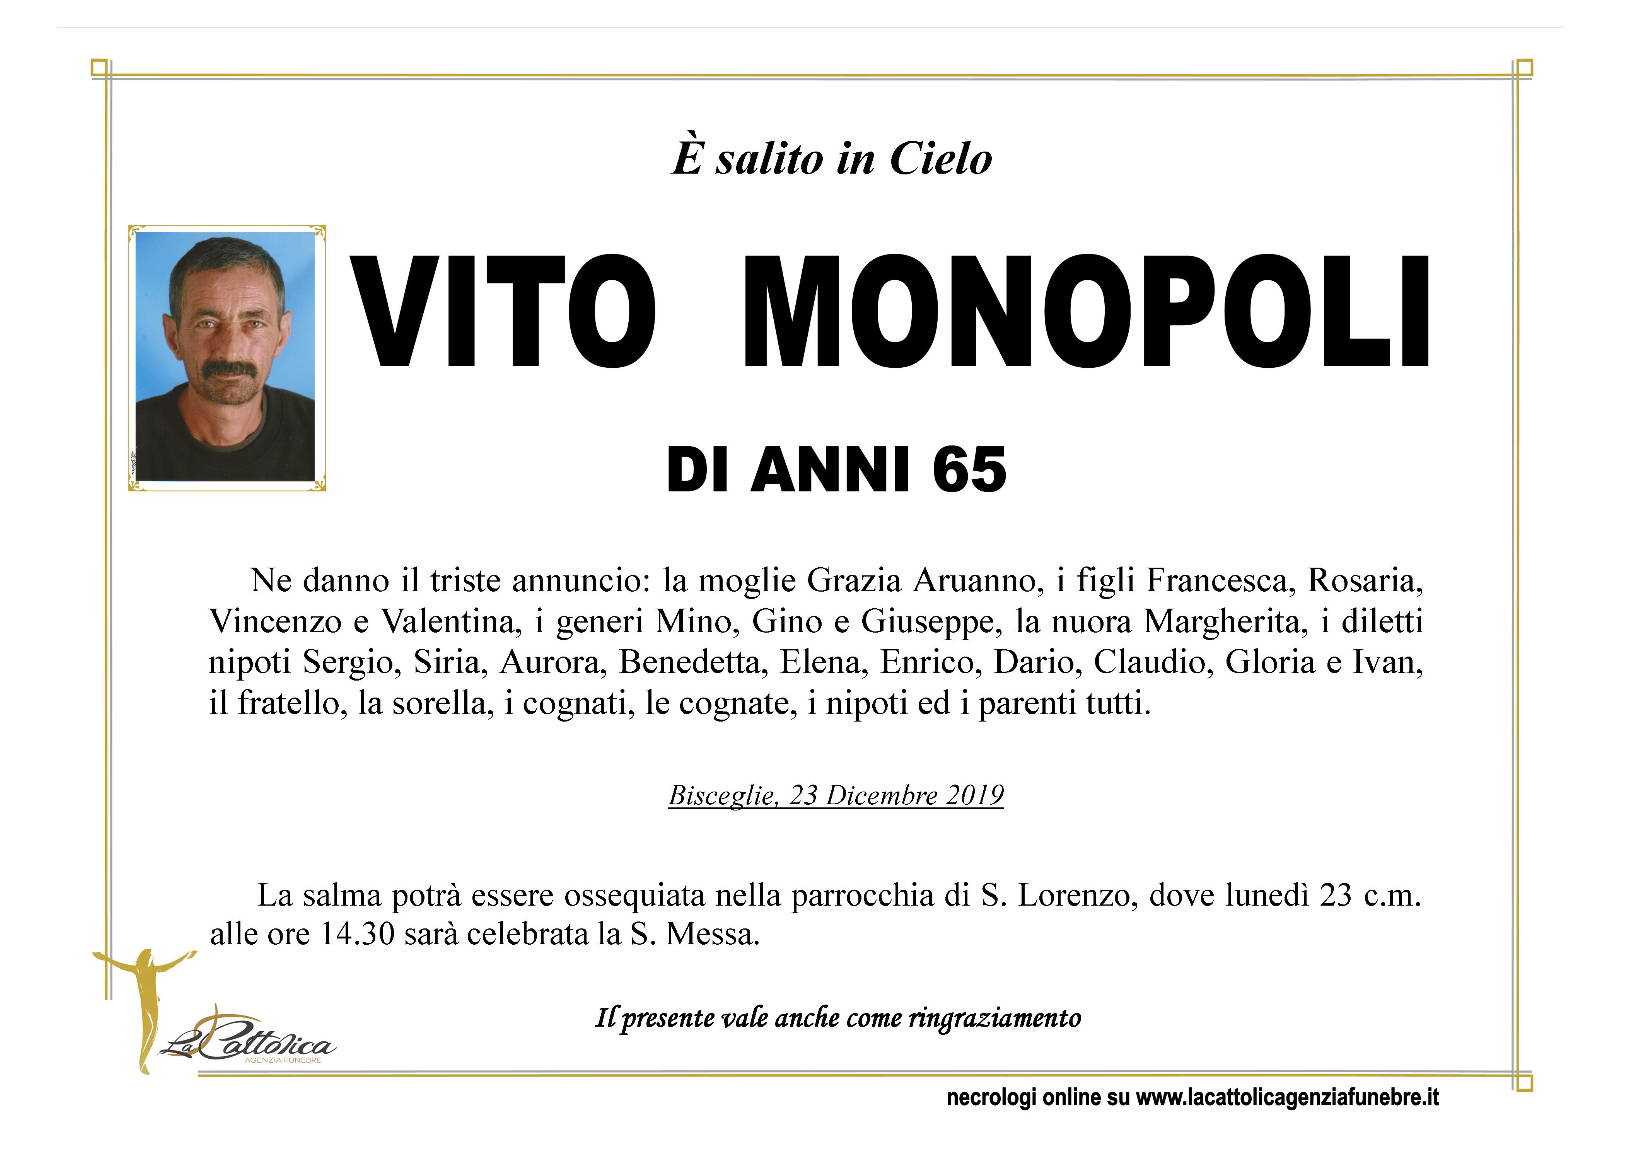 Vito Monopoli